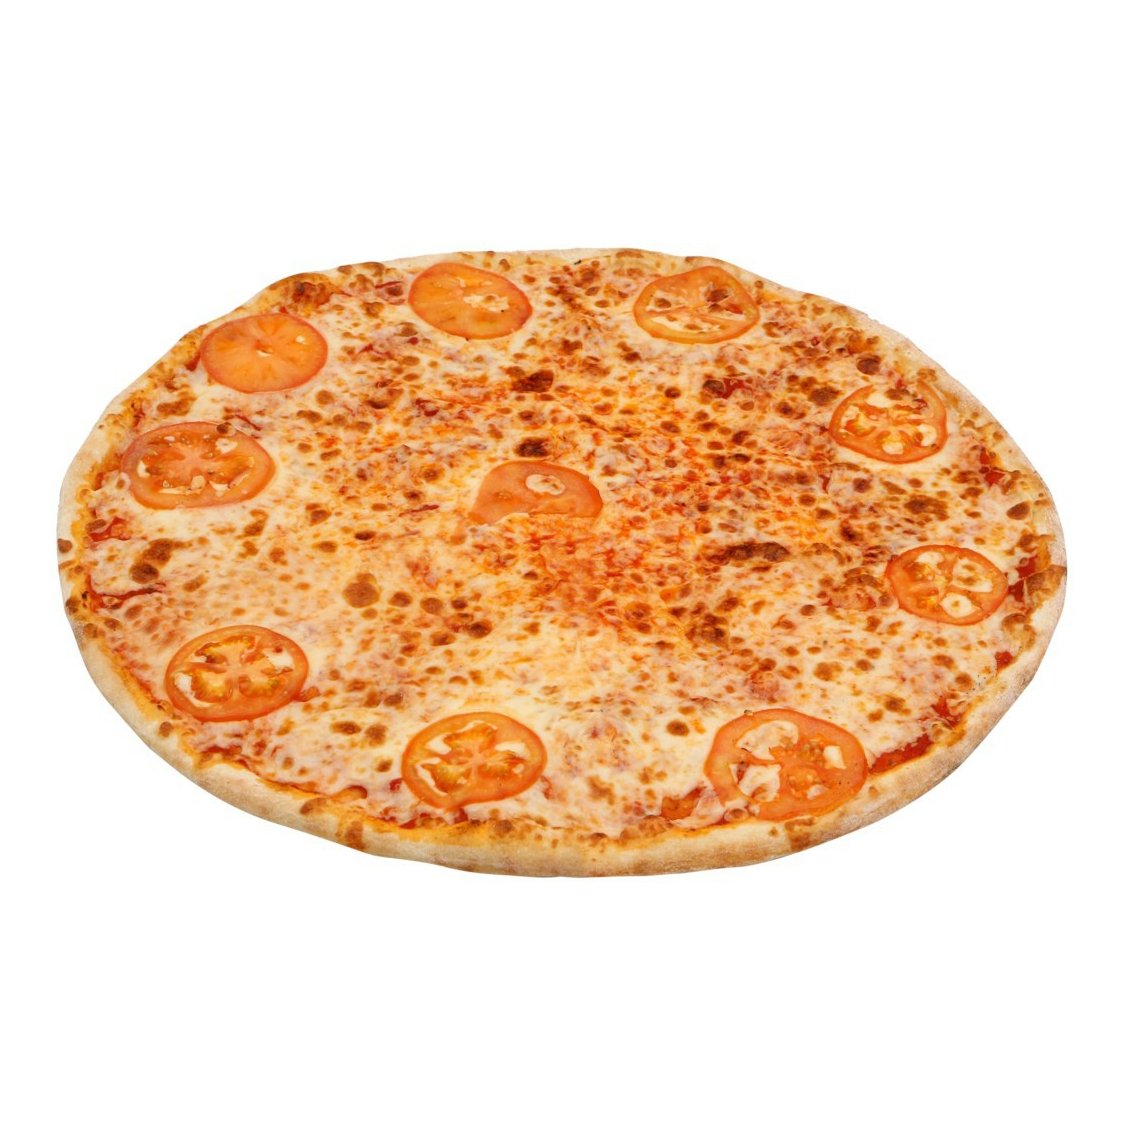 римское тесто для пиццы купить в москве фото 54